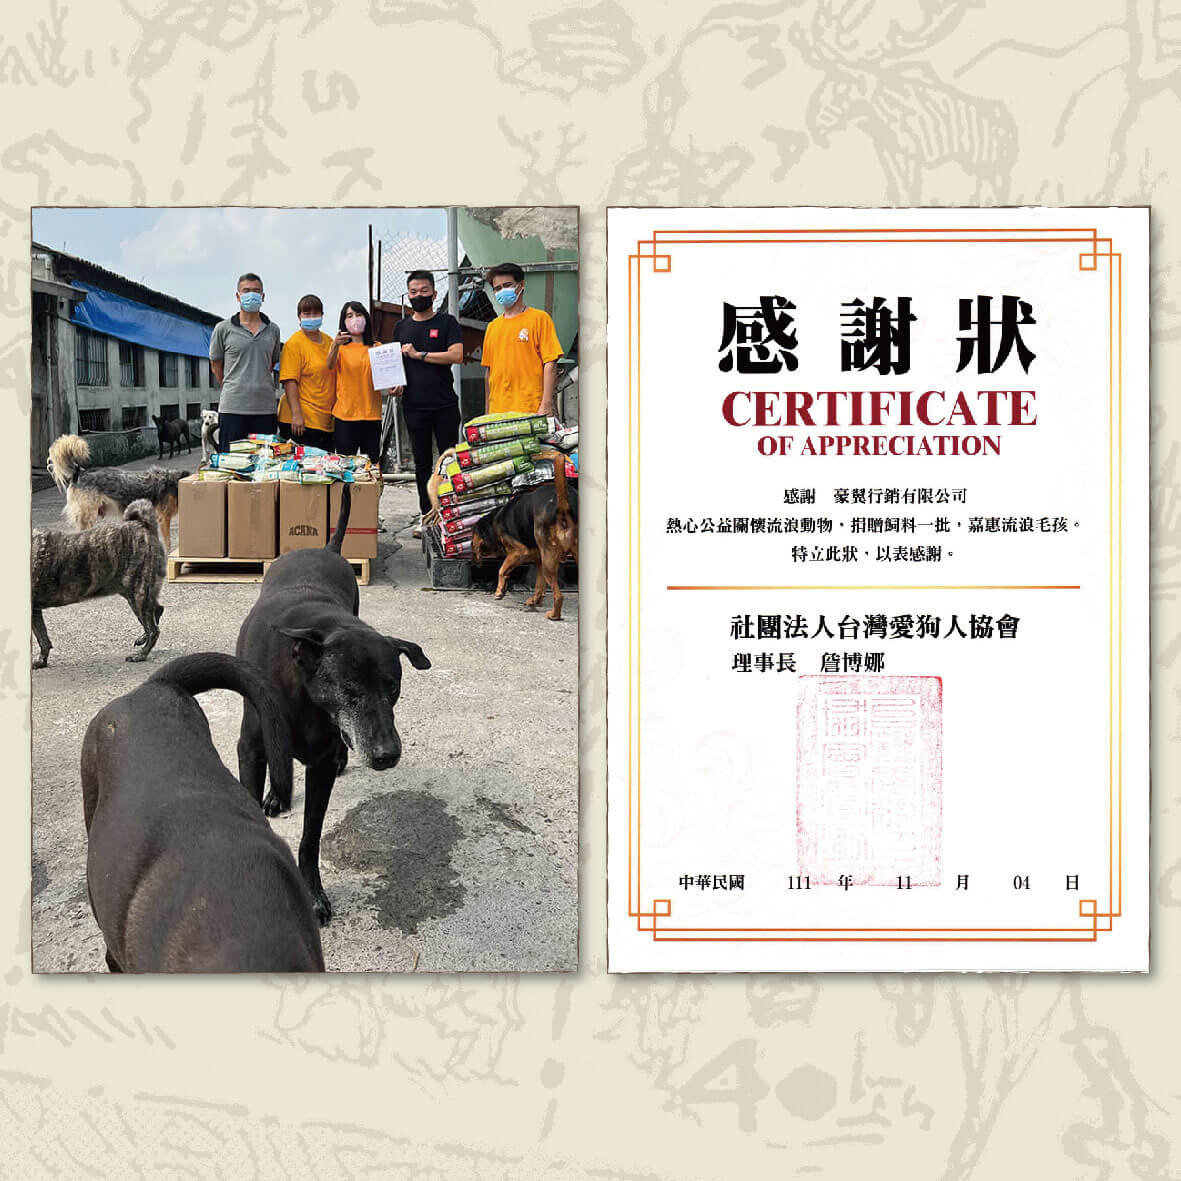 豪翼行銷捐贈愛肯拿飼料至團法人台灣愛狗人協會